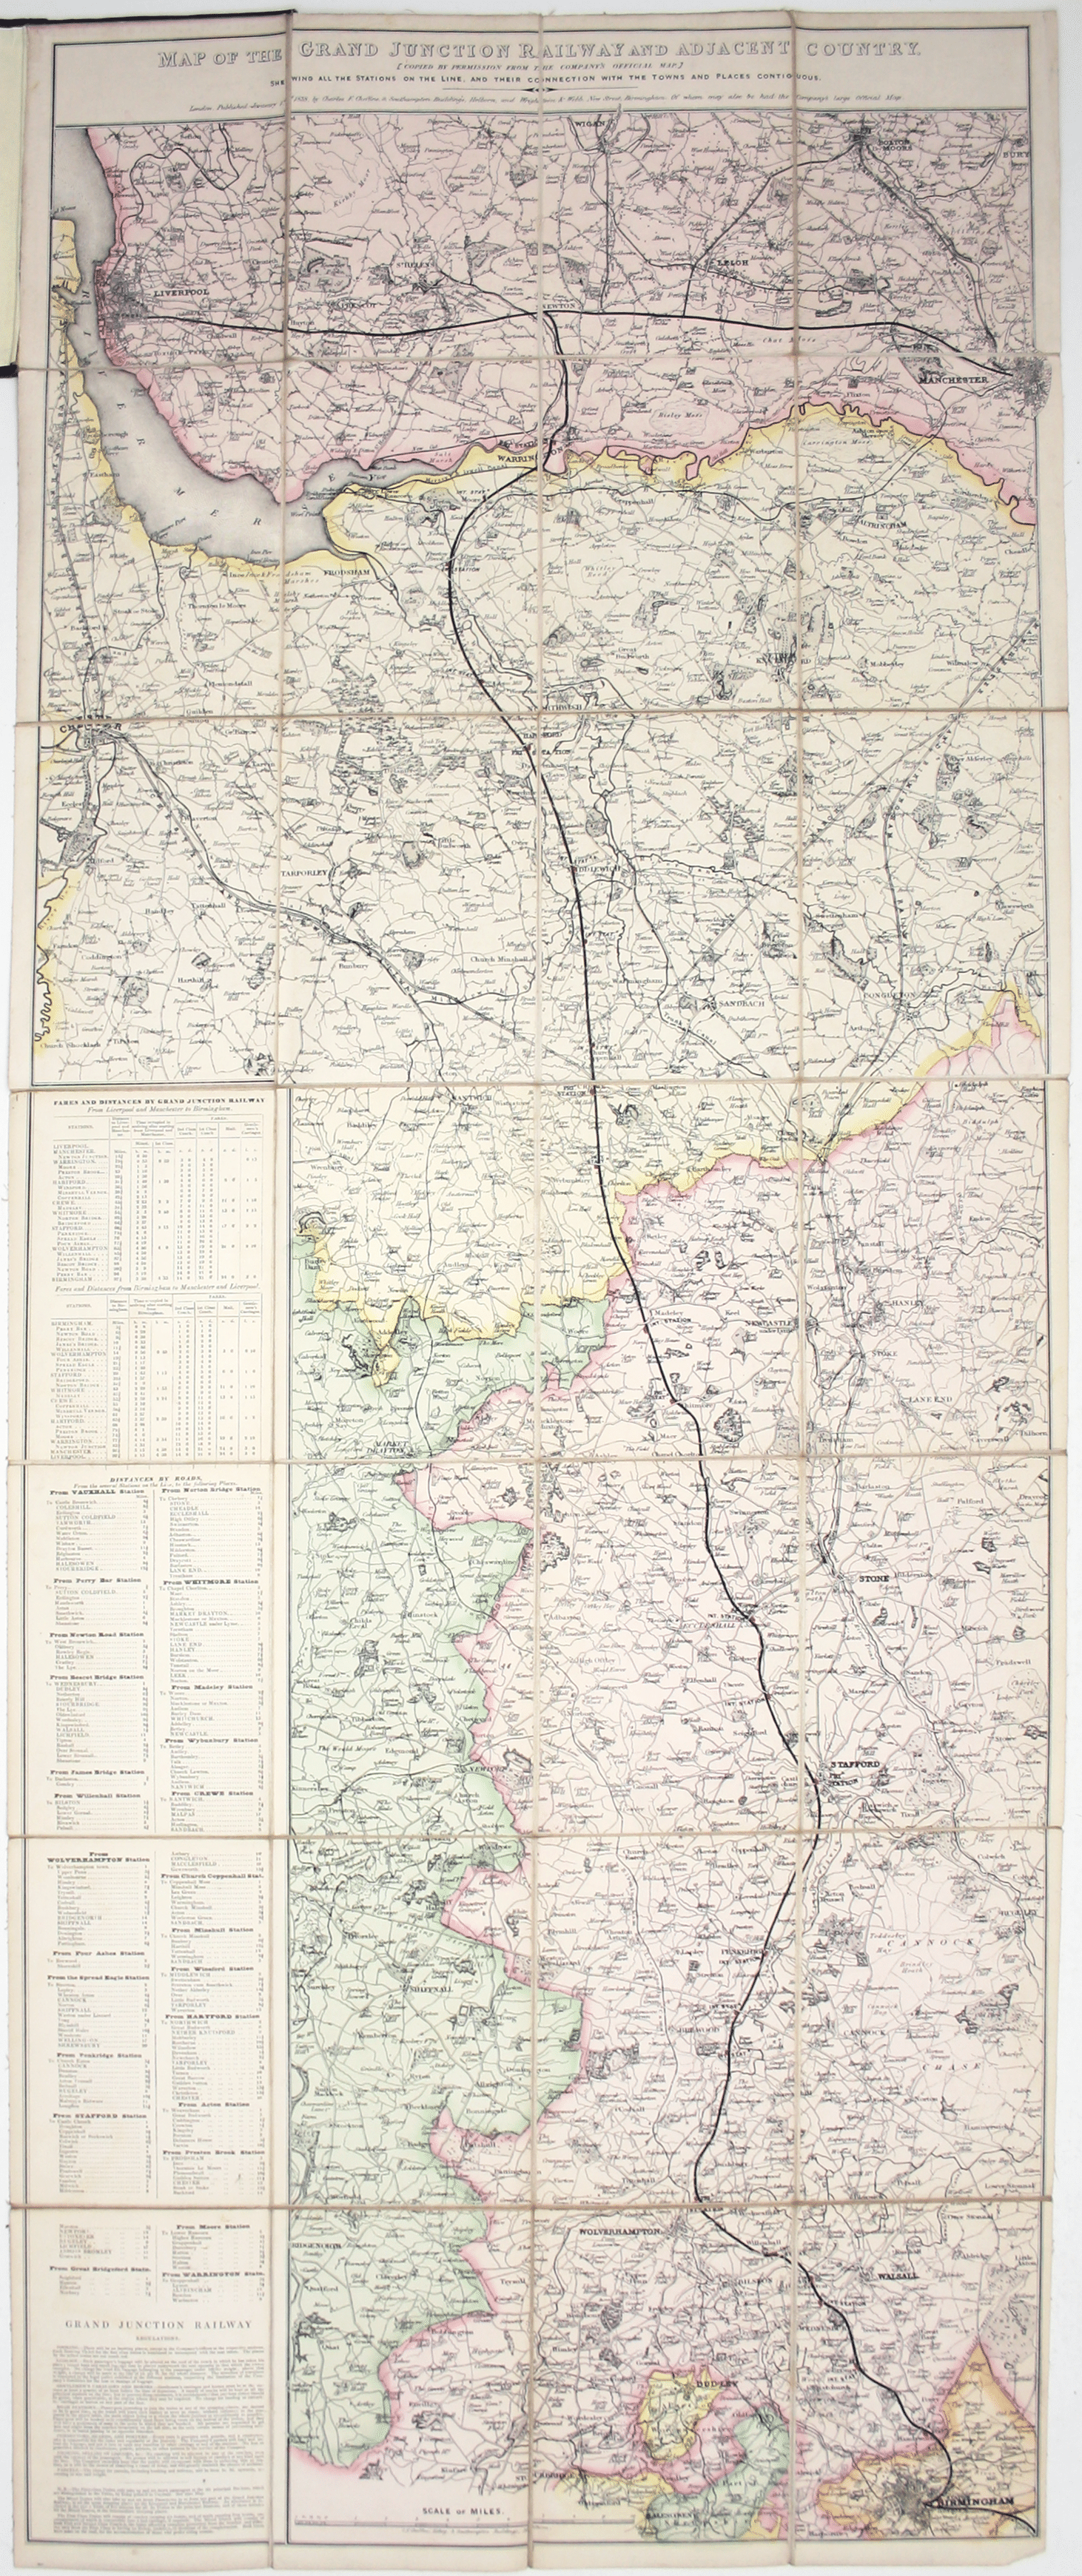 Cheffins’ Grand Junction Railway Map